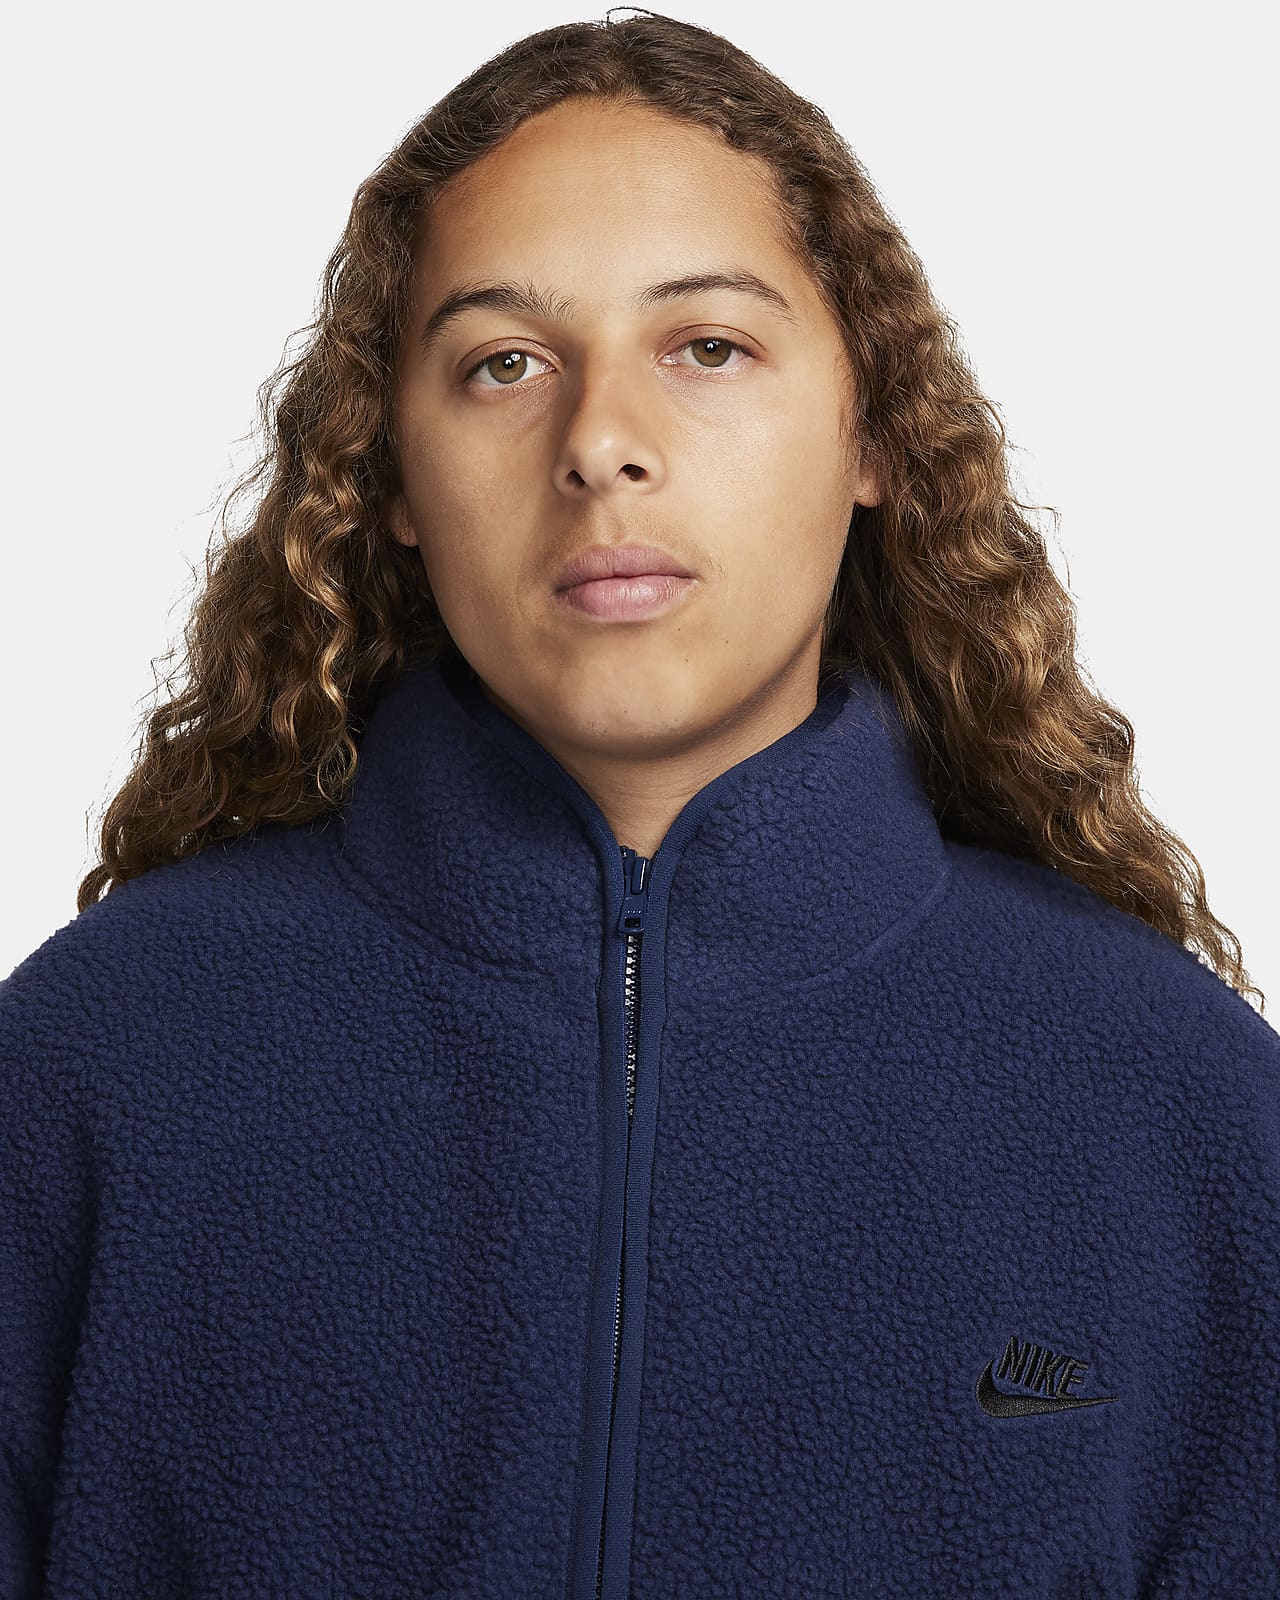 Nike Club Fleece Men's Winterized Jacket